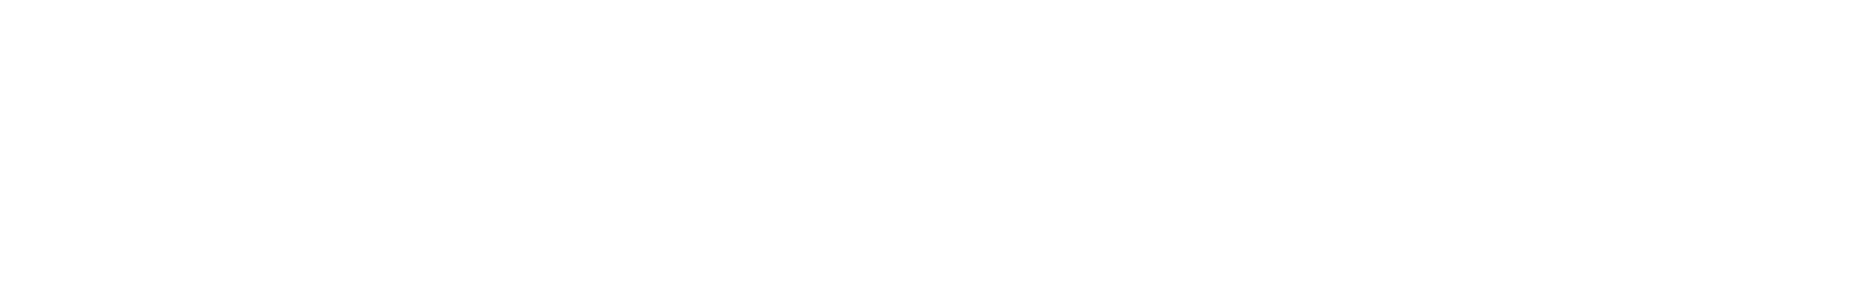 wordcruncher-logo-white